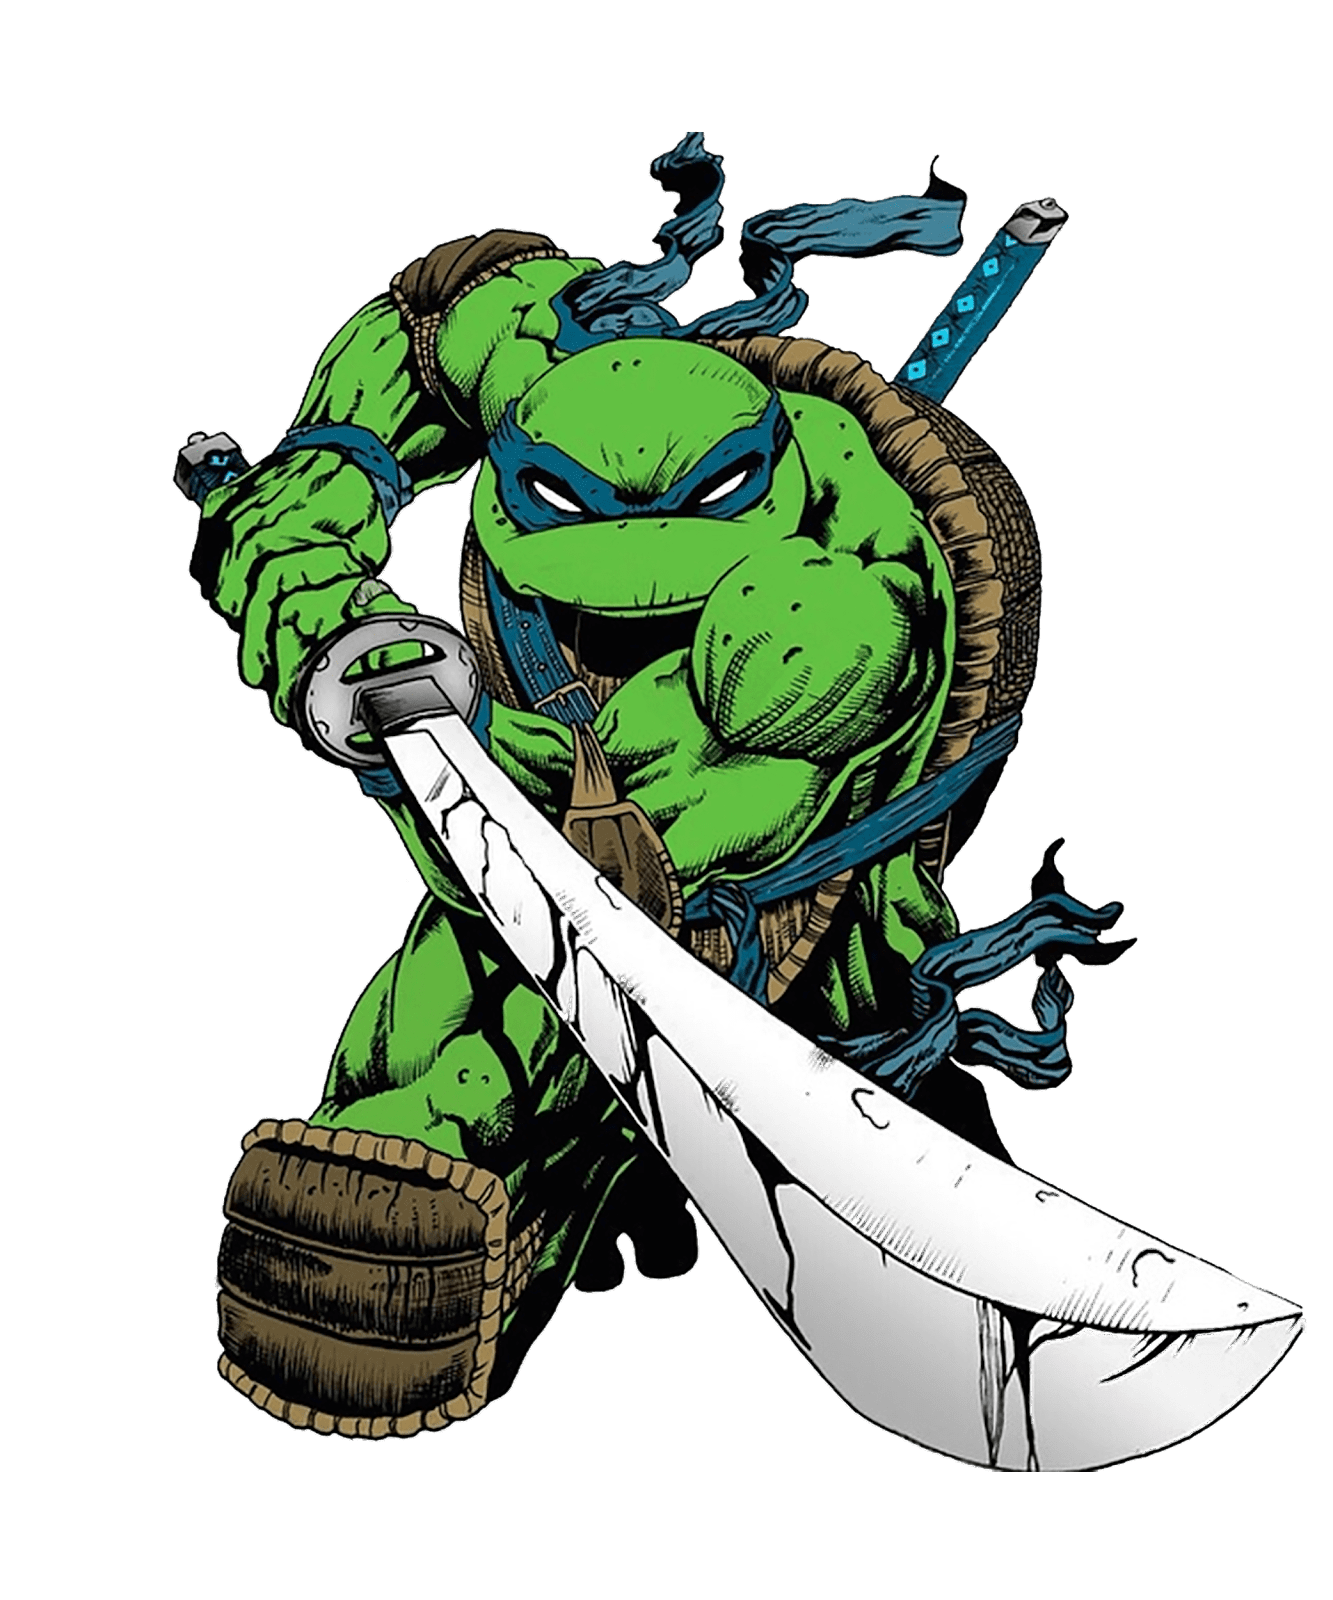 ምስል በተከፈለ las tortugas ninja በማስታወቂያው png ዘይት ተስፋ ከሚያበሩ